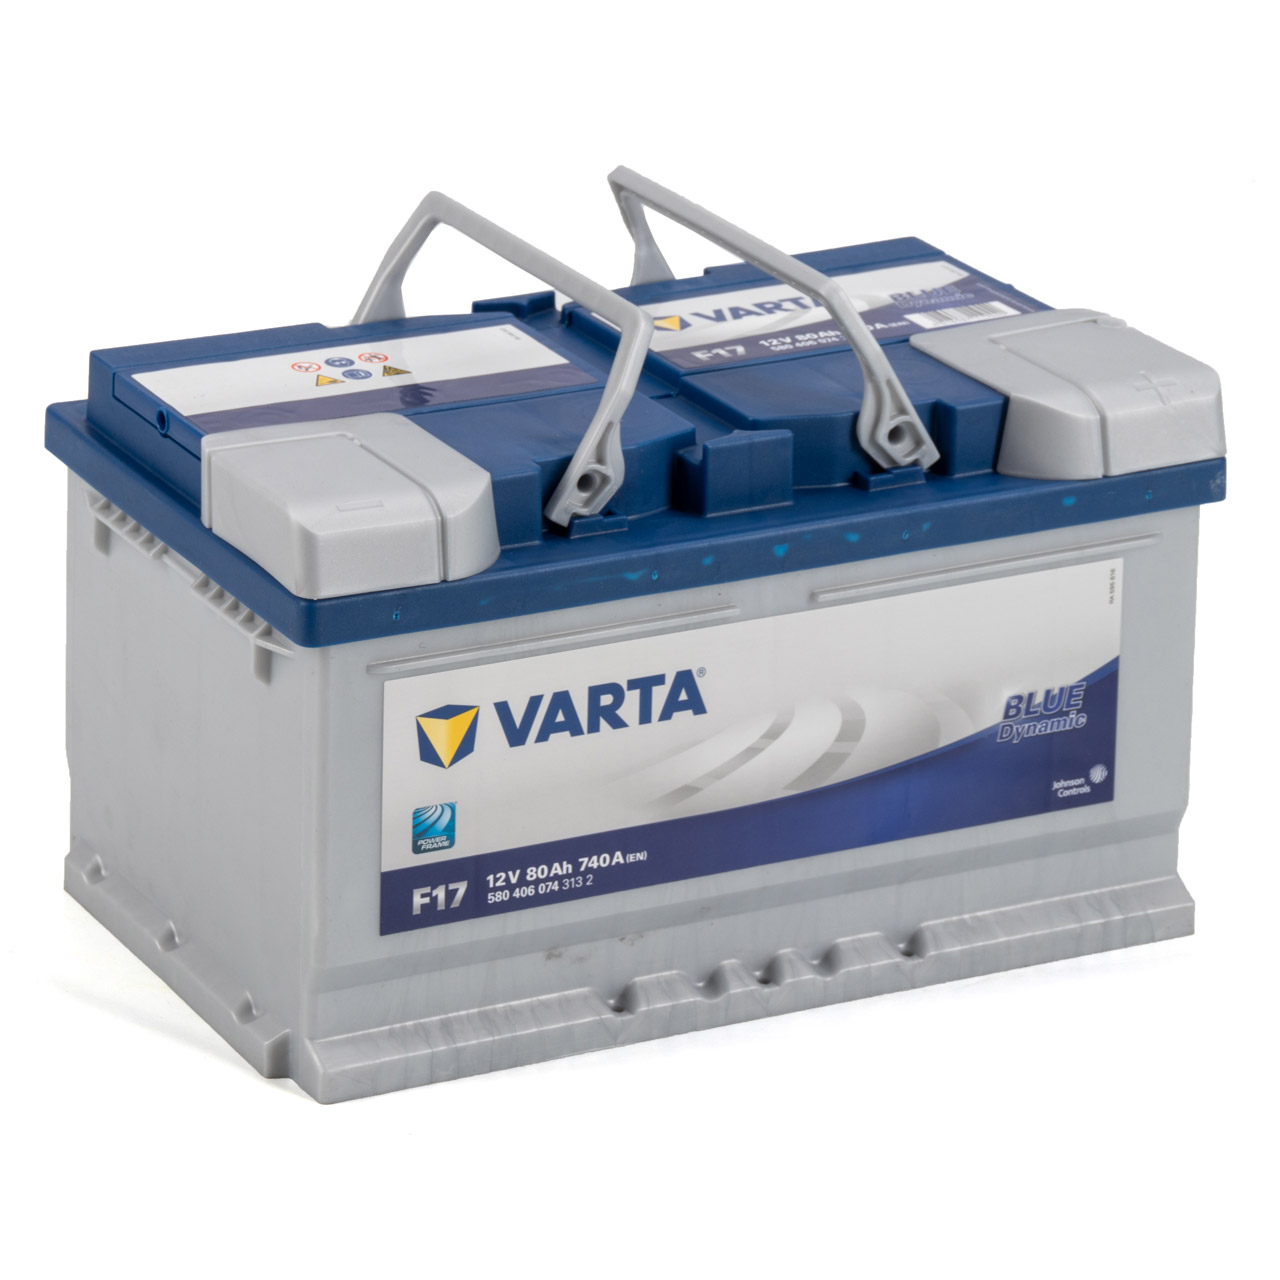 VARTA BLUE dynamic F17 Autobatterie Batterie Starterbatterie 12V